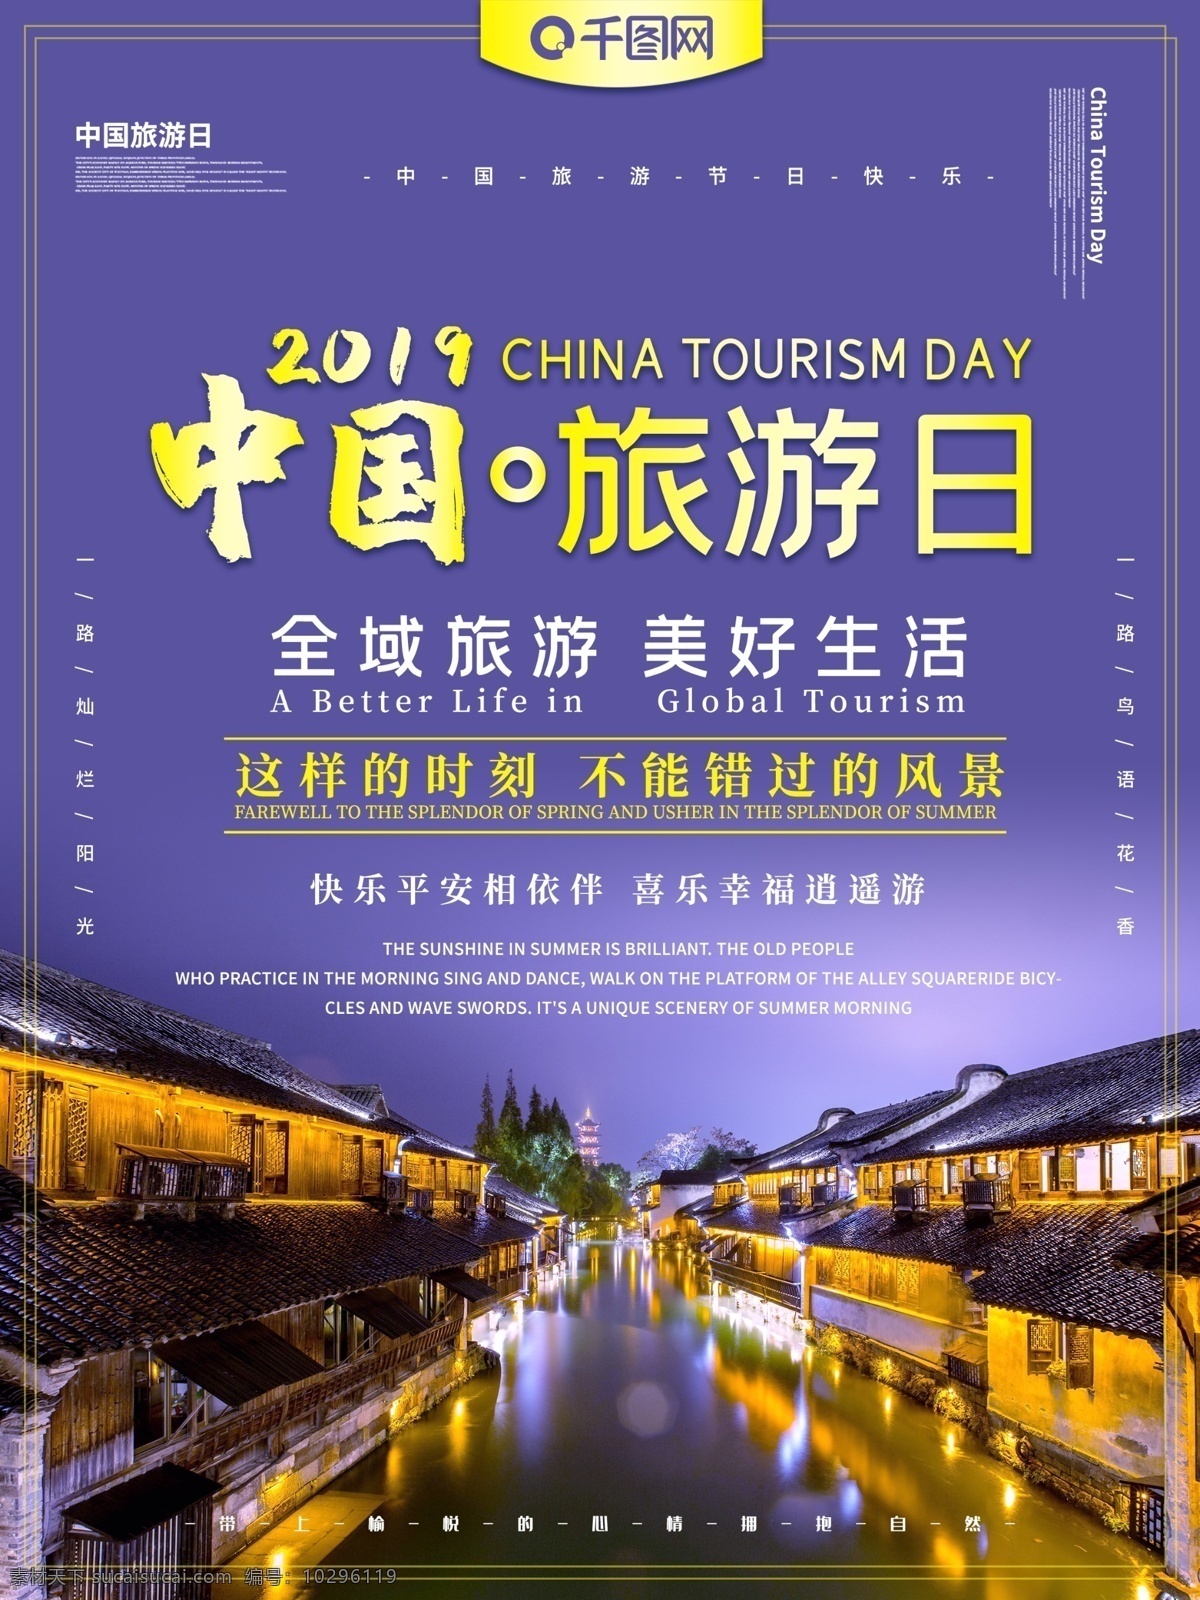 中国旅游 日 主题 海报 中国旅游日 旅游 旅行 旅游日 全域旅游 美好生活